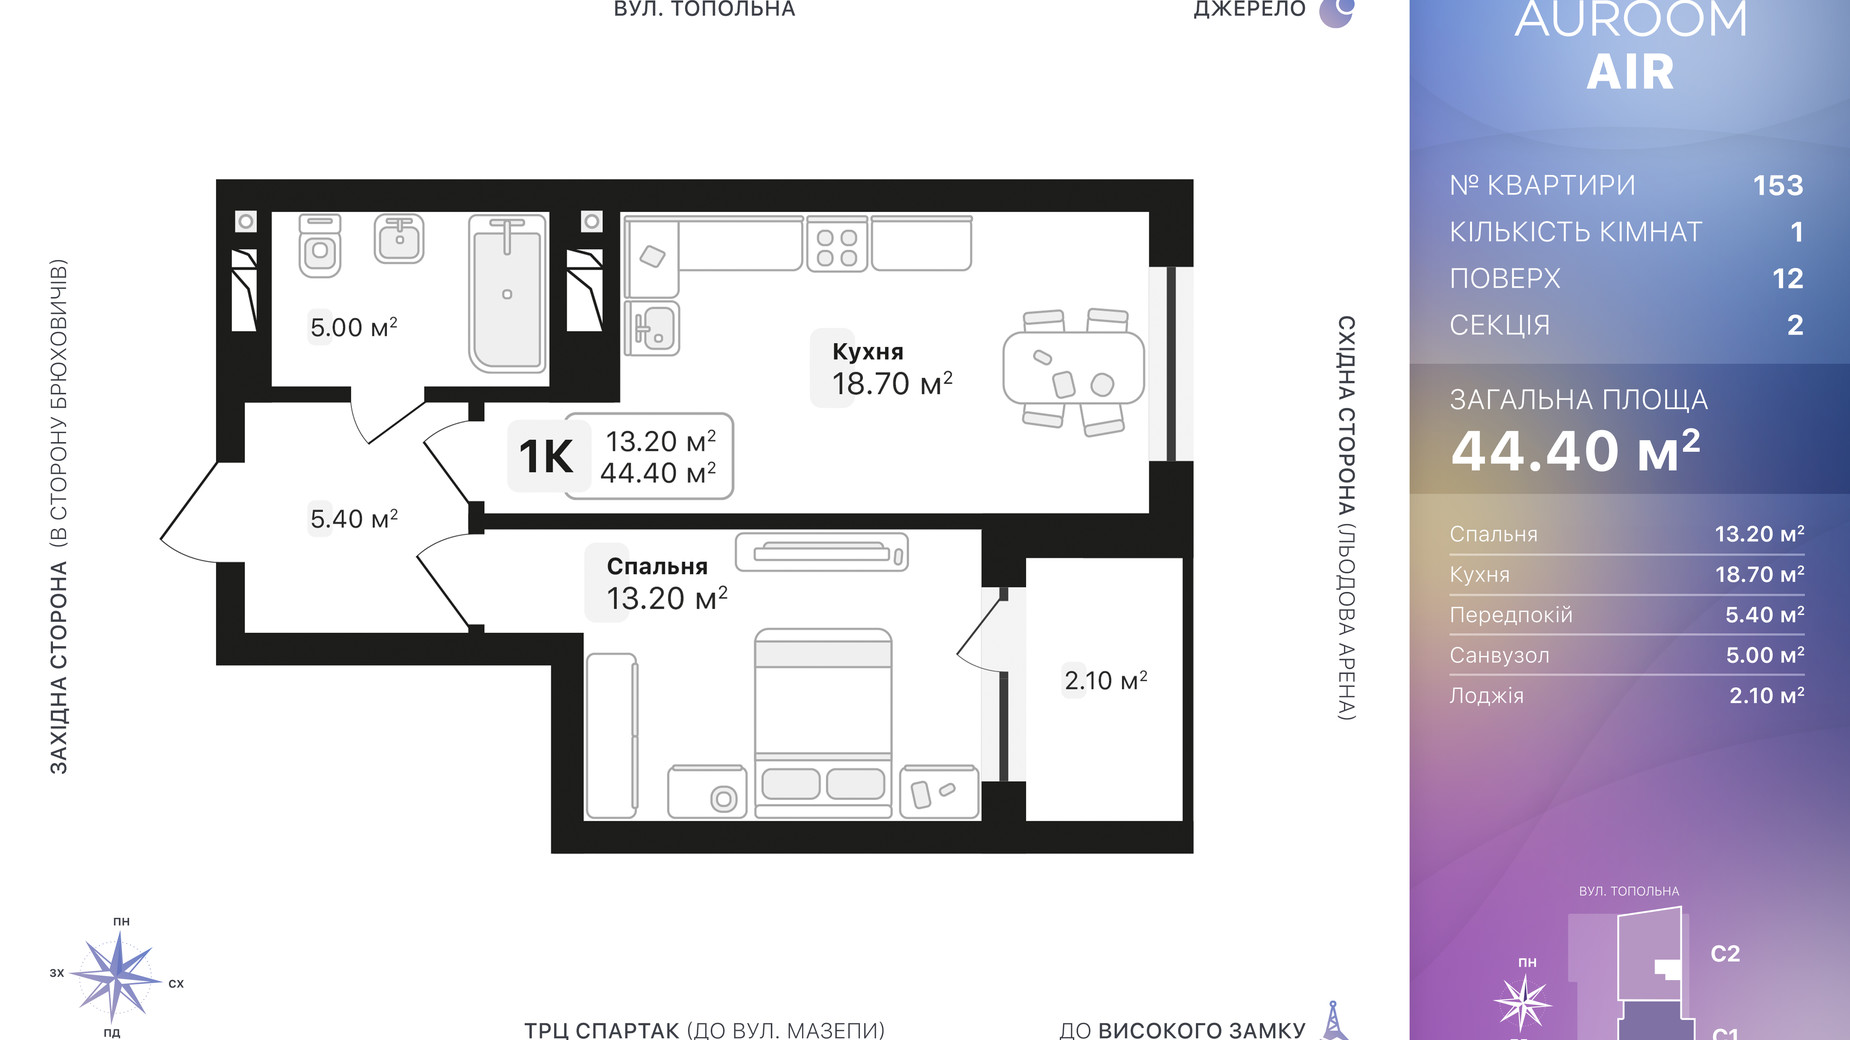 Планировка 1-комнатной квартиры в ЖК Auroom Air 44.4 м², фото 552423